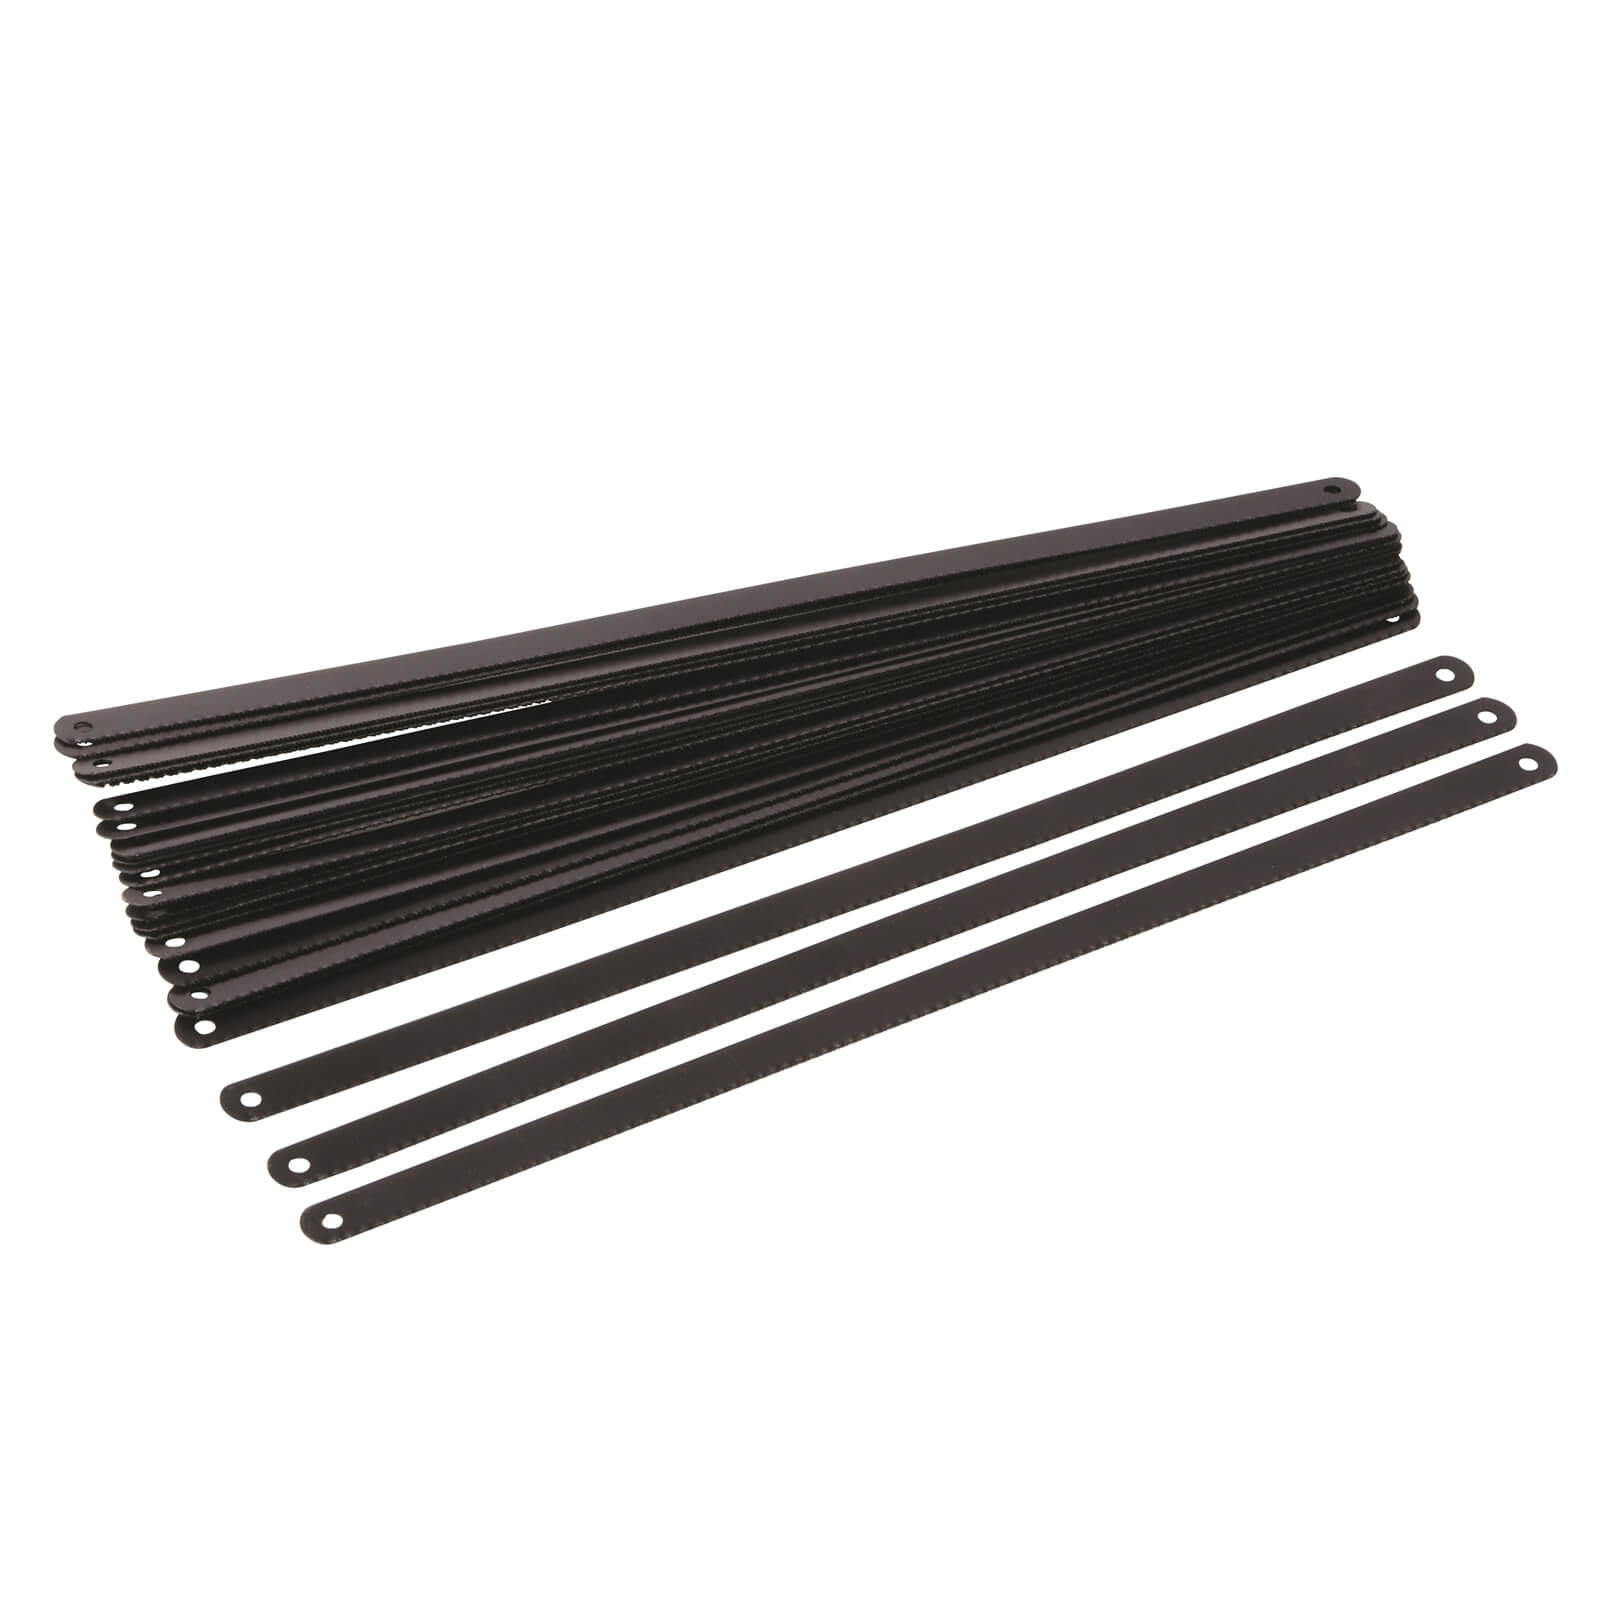 Silverline Carbon Steel Hacksaw Blade 24 Pack 300mm (24tpi)